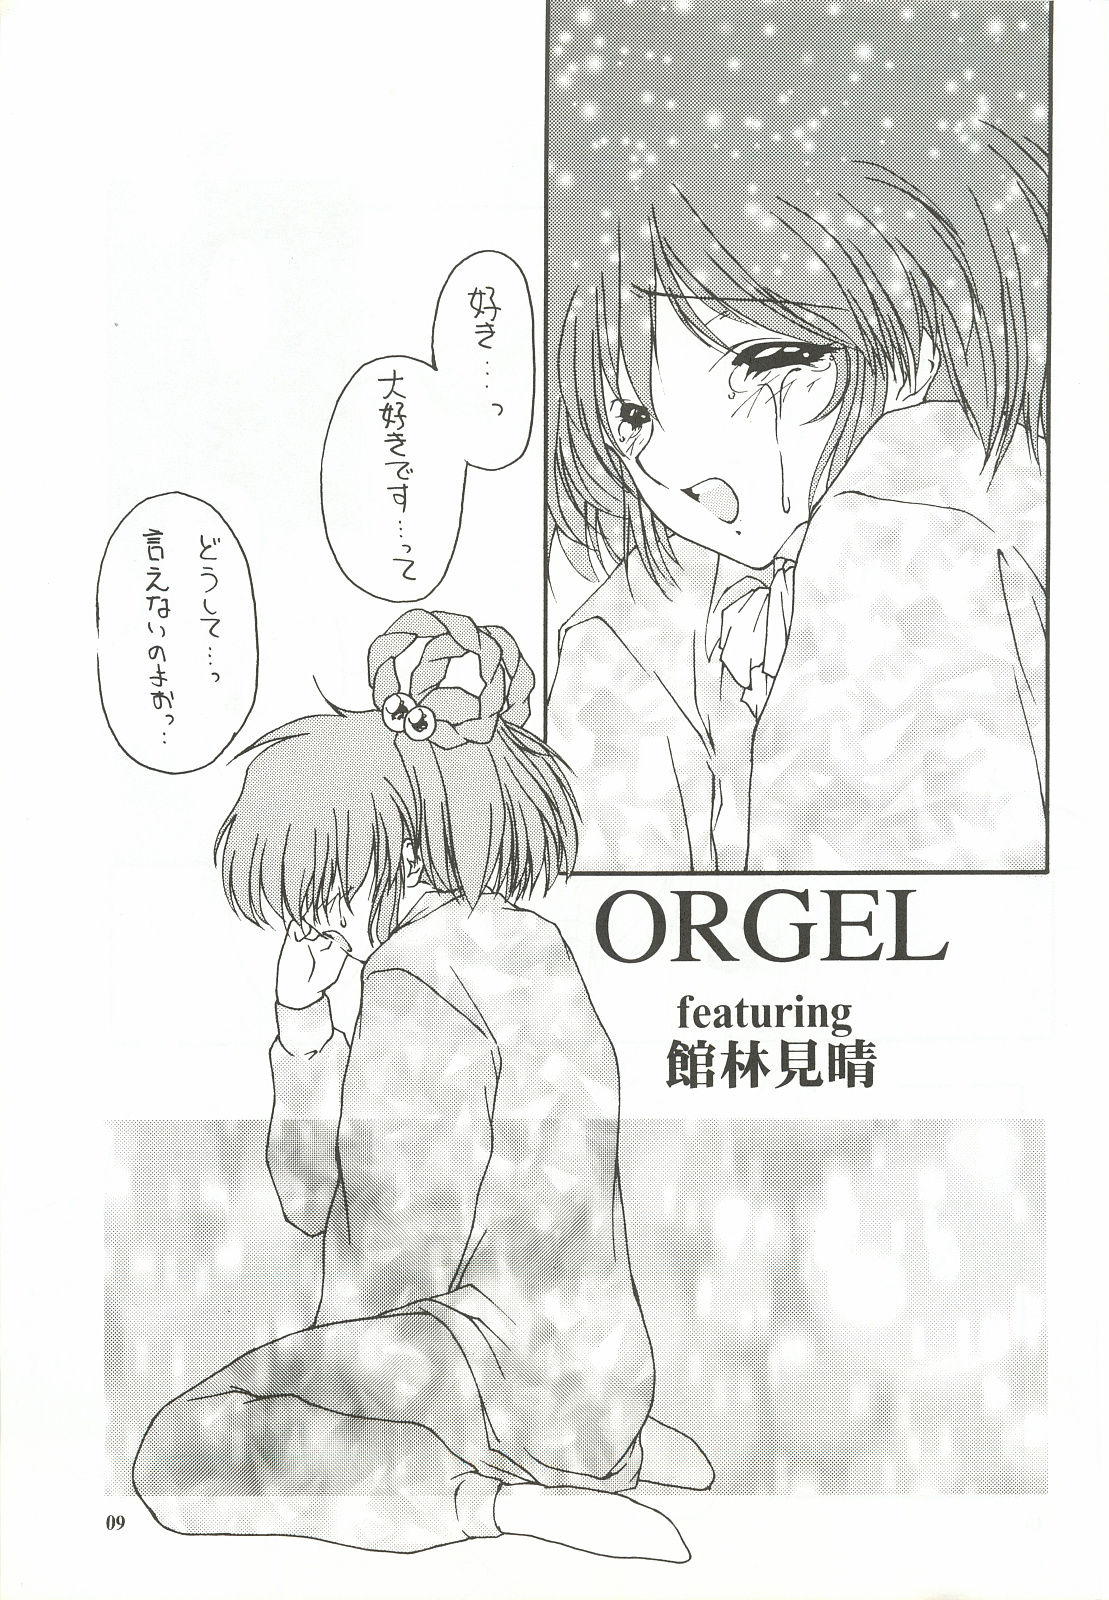 [致命傷 (弥舞秀人)] ORGEL featuring 館林見晴 (ときめきメモリアル)